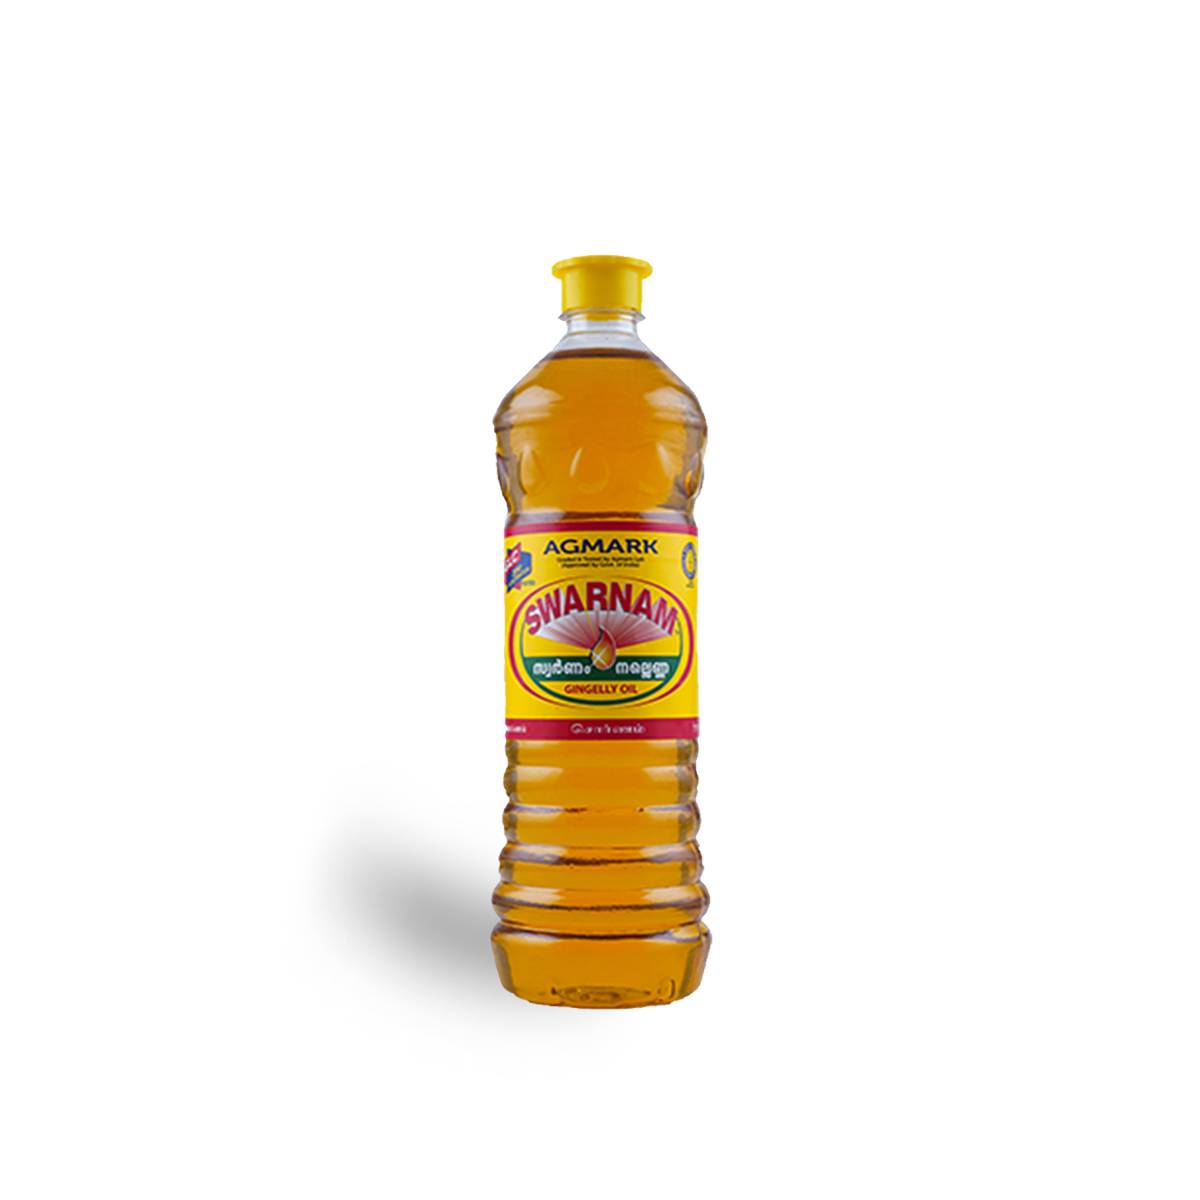 Swarnam Sesame oil 200ml